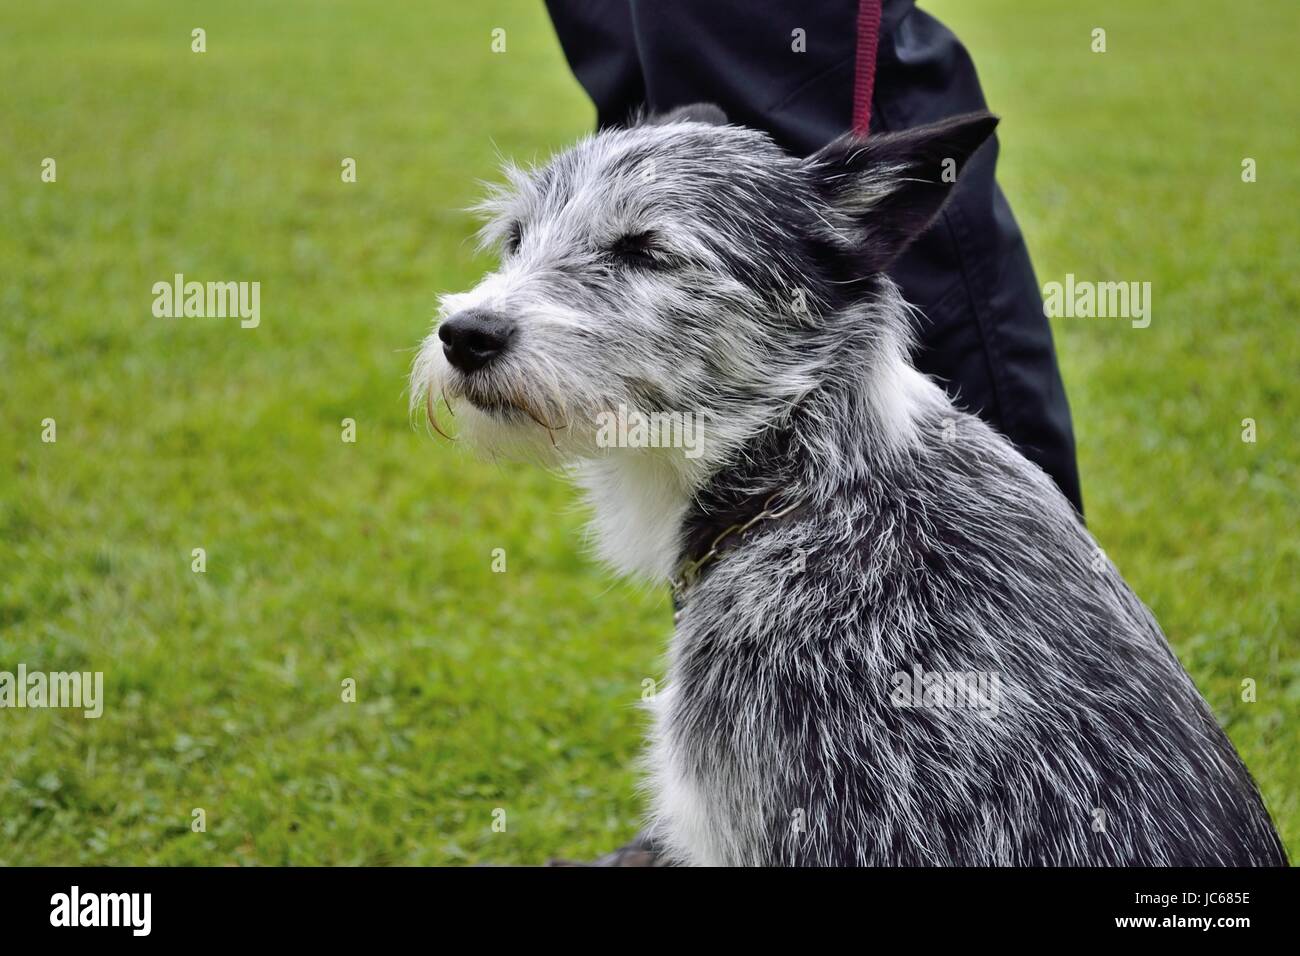 struppiger schwarzweiss-Hund ist angeleint - Kettenhalsband Stock Photo -  Alamy